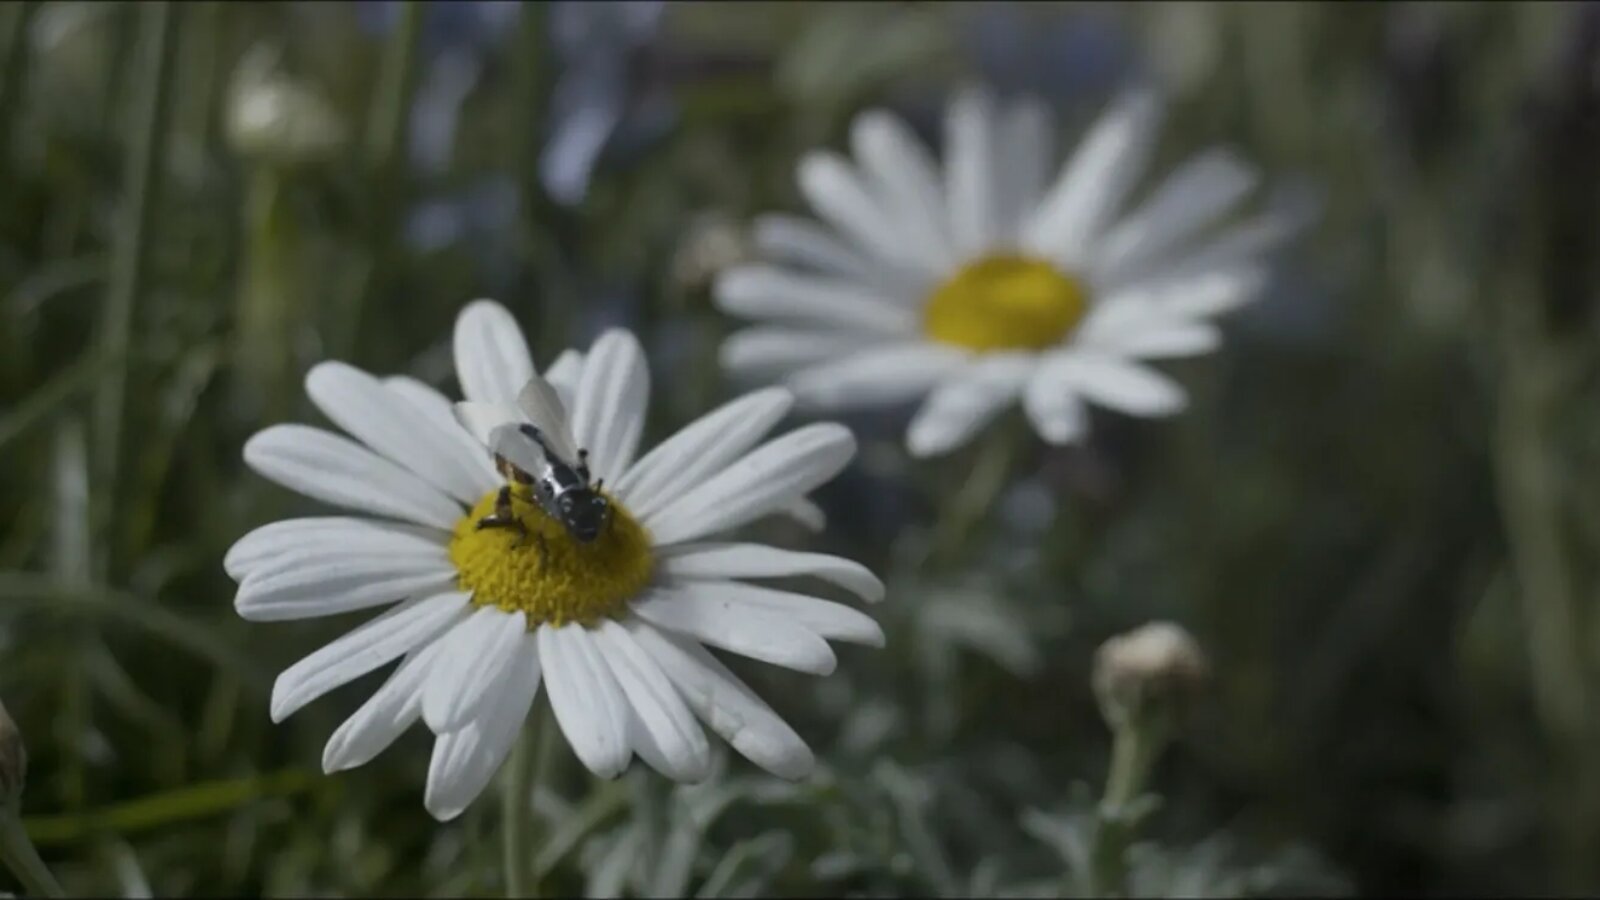 Die echten Robo-Bienen sind zum Glück friedlicher als in Black Mirror.